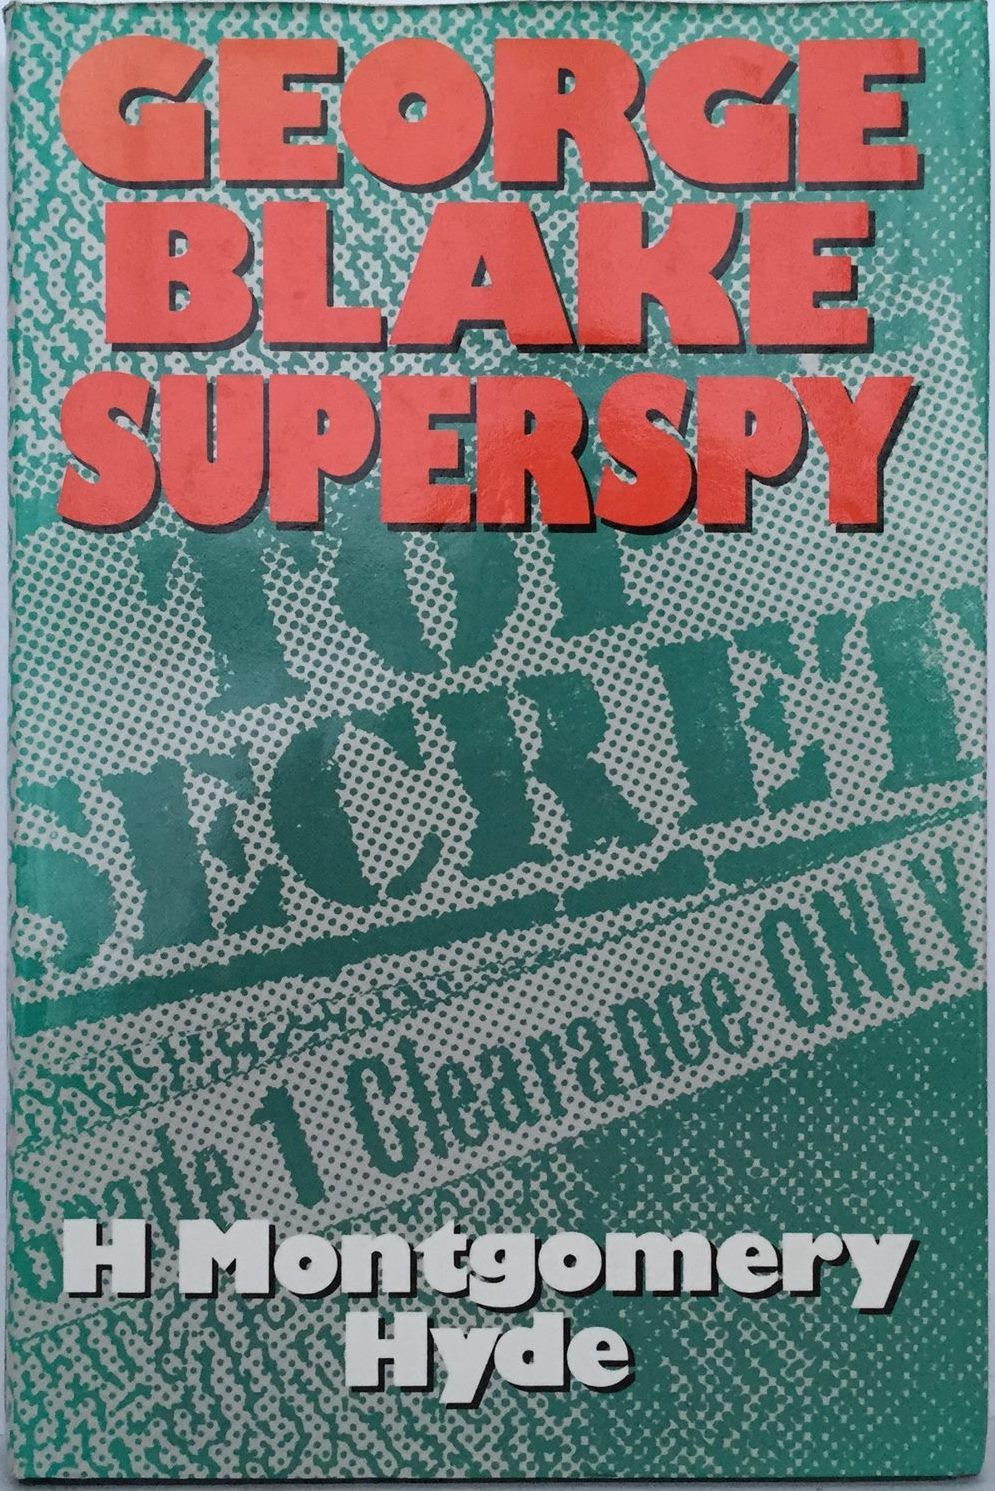 GEORGE BLAKE: Superspy